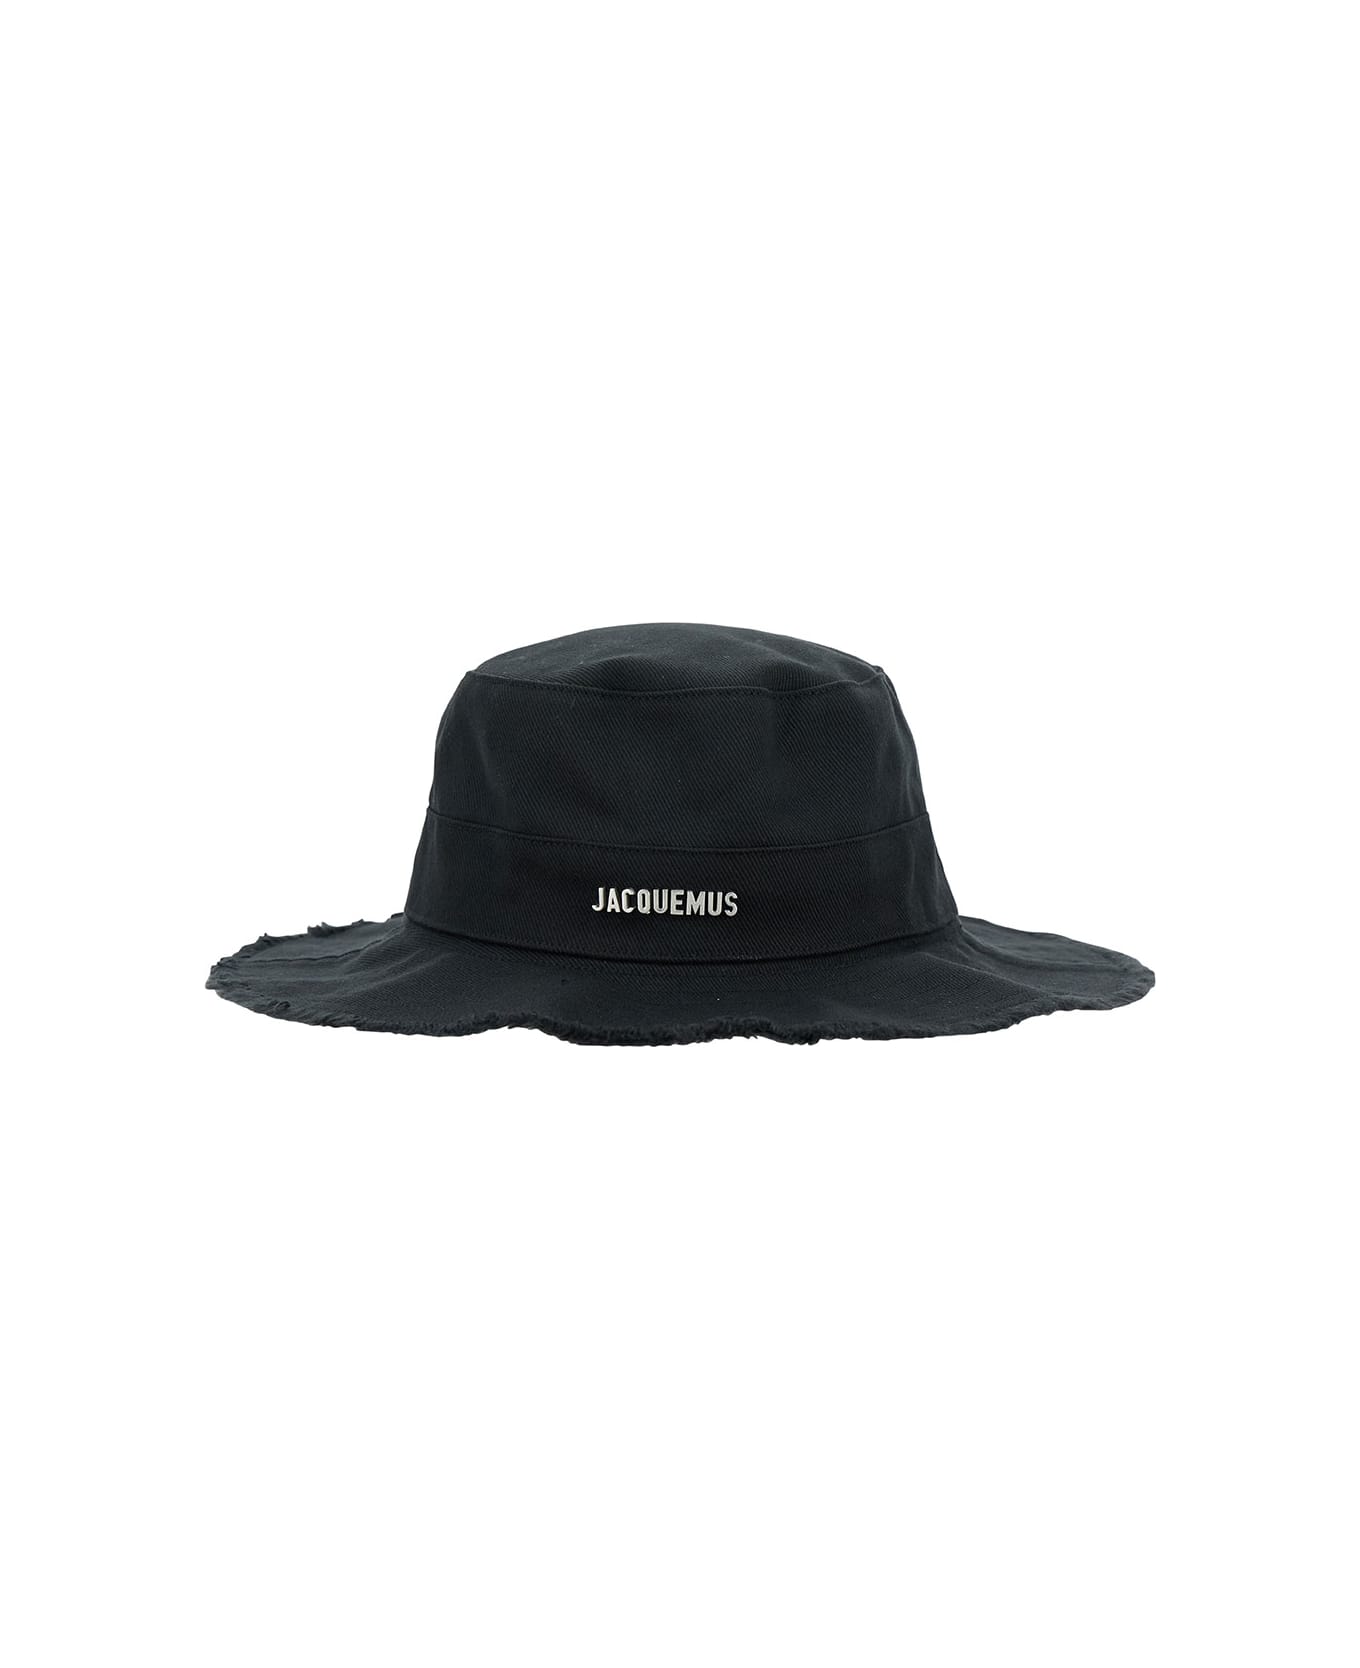 Jacquemus Le Bob Artichaut Cotton Hat - Black 帽子